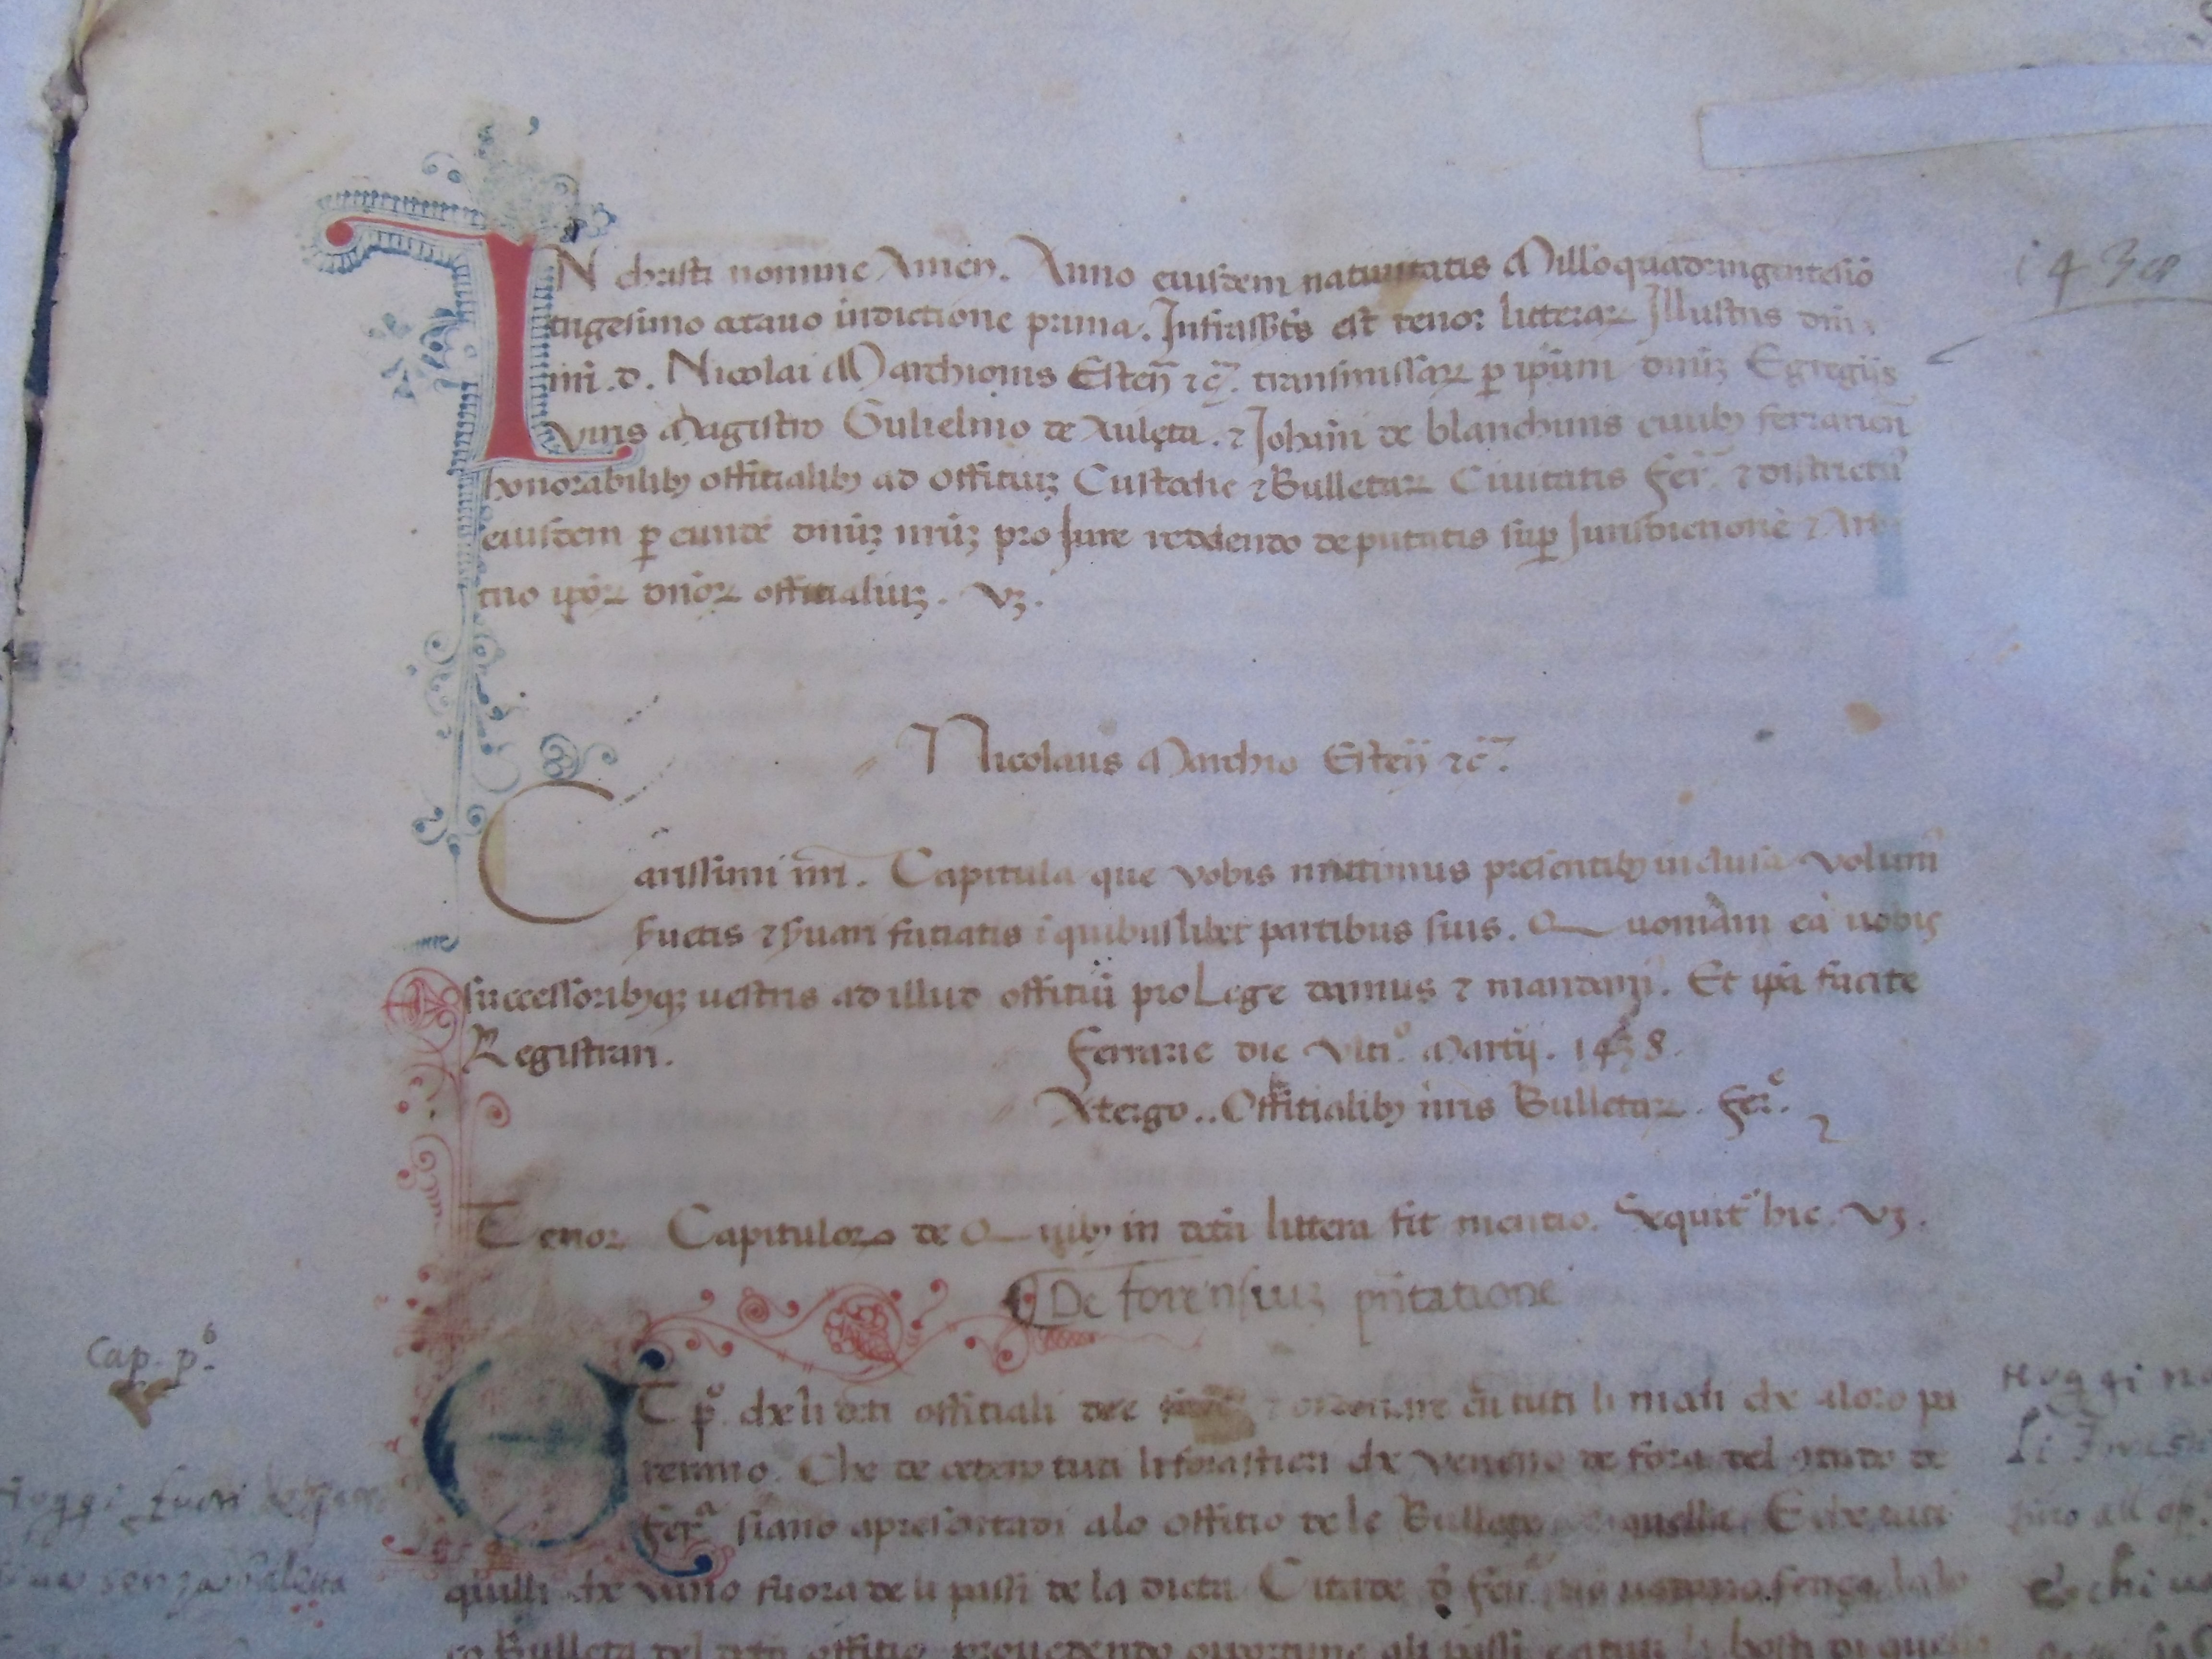 Incipit statuto bollette Fe (1438)